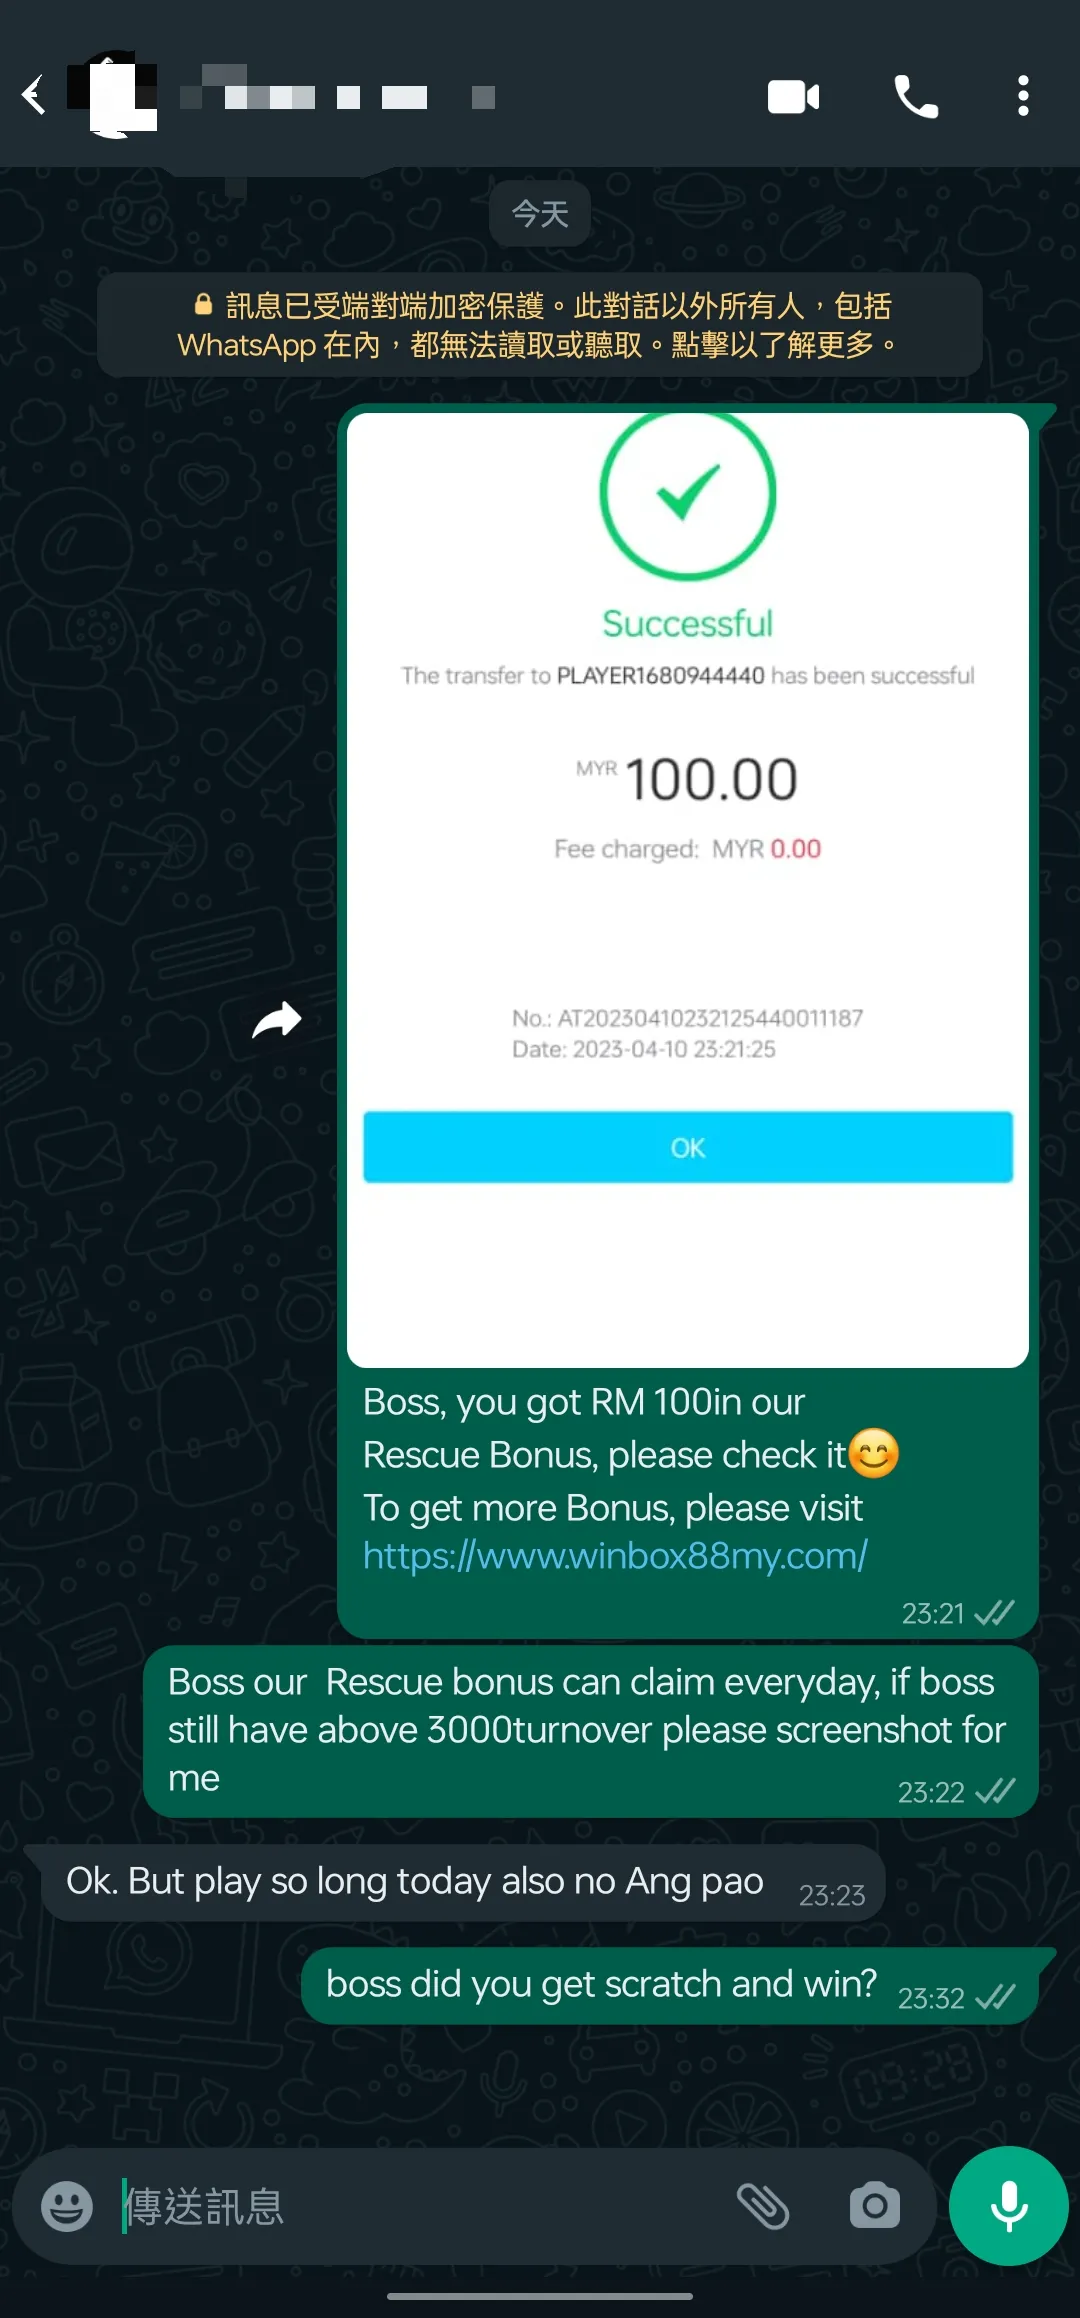 winbox rescue bonus past winner screenshot 57